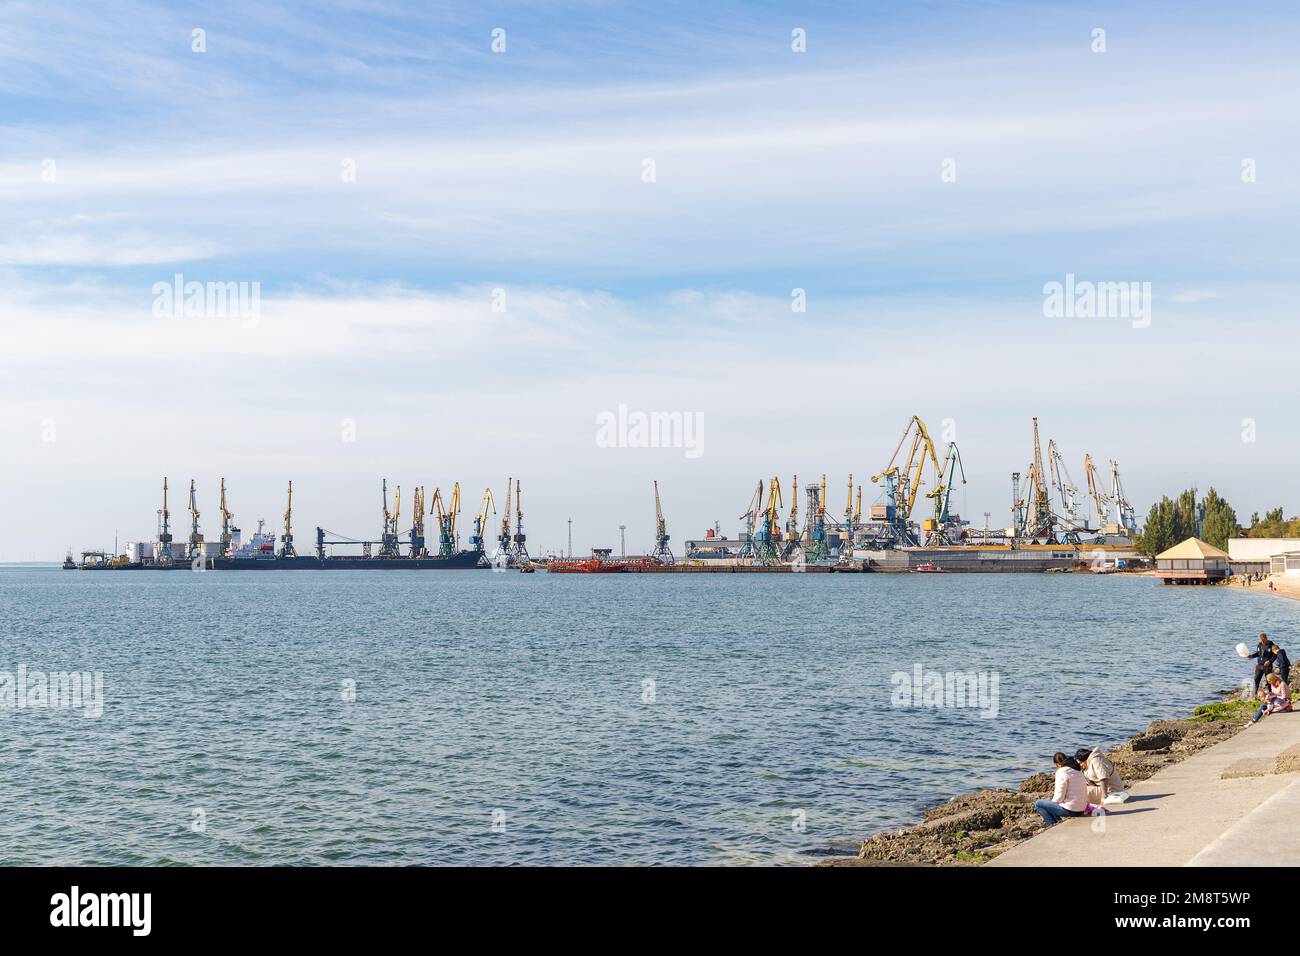 Schiffe und Schiffe im Frachthafen Berdjansk, Ukraine. Ukrainischer Frachthafen auf dem Asowschen Meer. Stockfoto